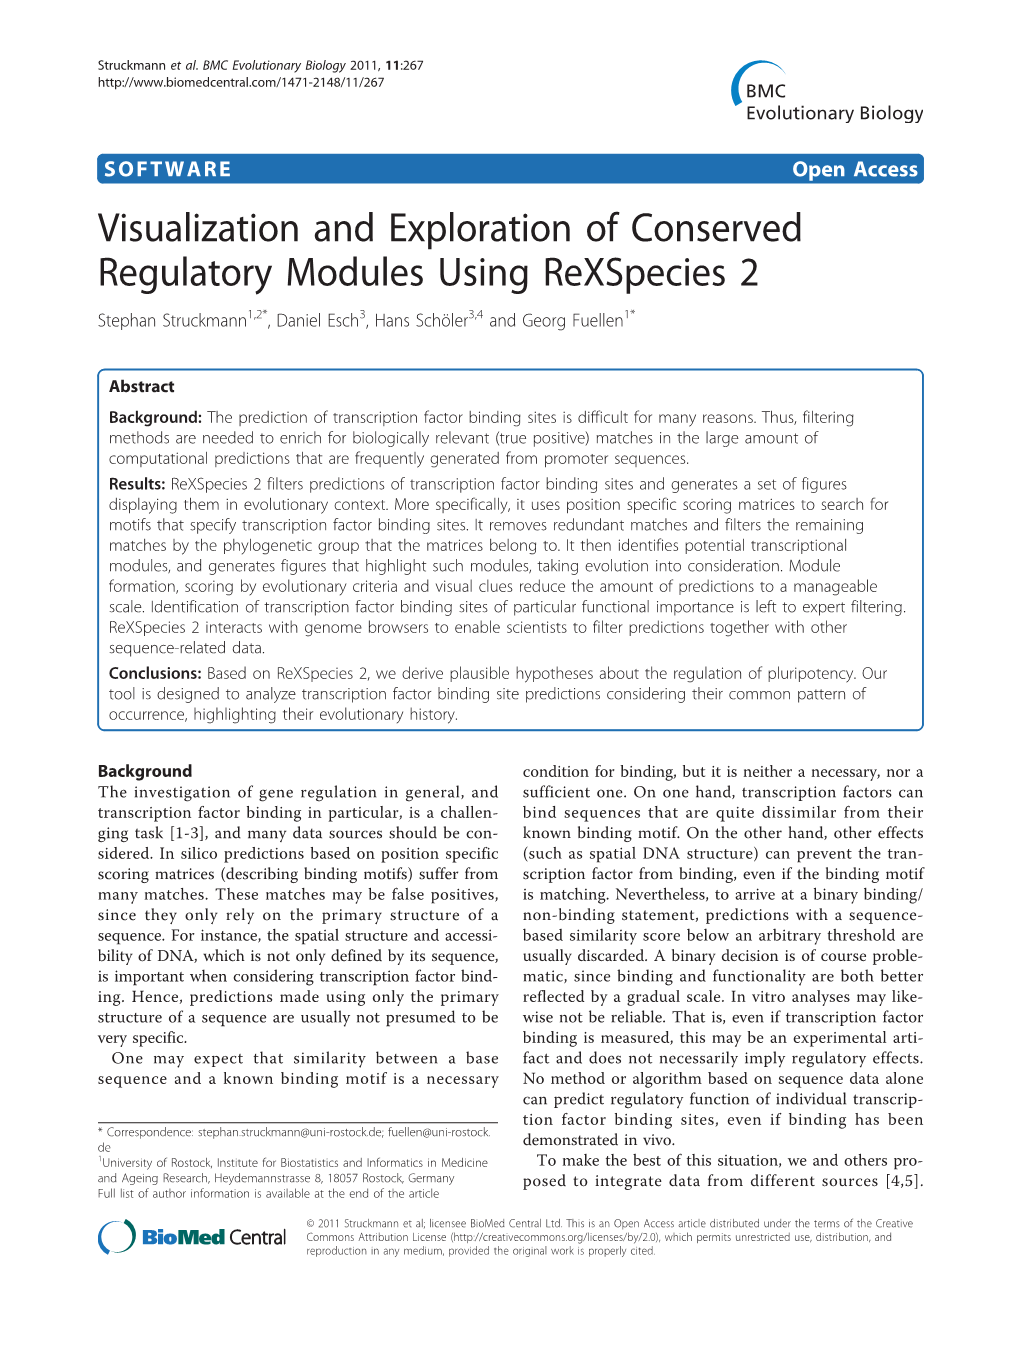 Visualization and Exploration of Conserved Regulatory Modules Using Rexspecies 2 Stephan Struckmann1,2*, Daniel Esch3, Hans Schöler3,4 and Georg Fuellen1*